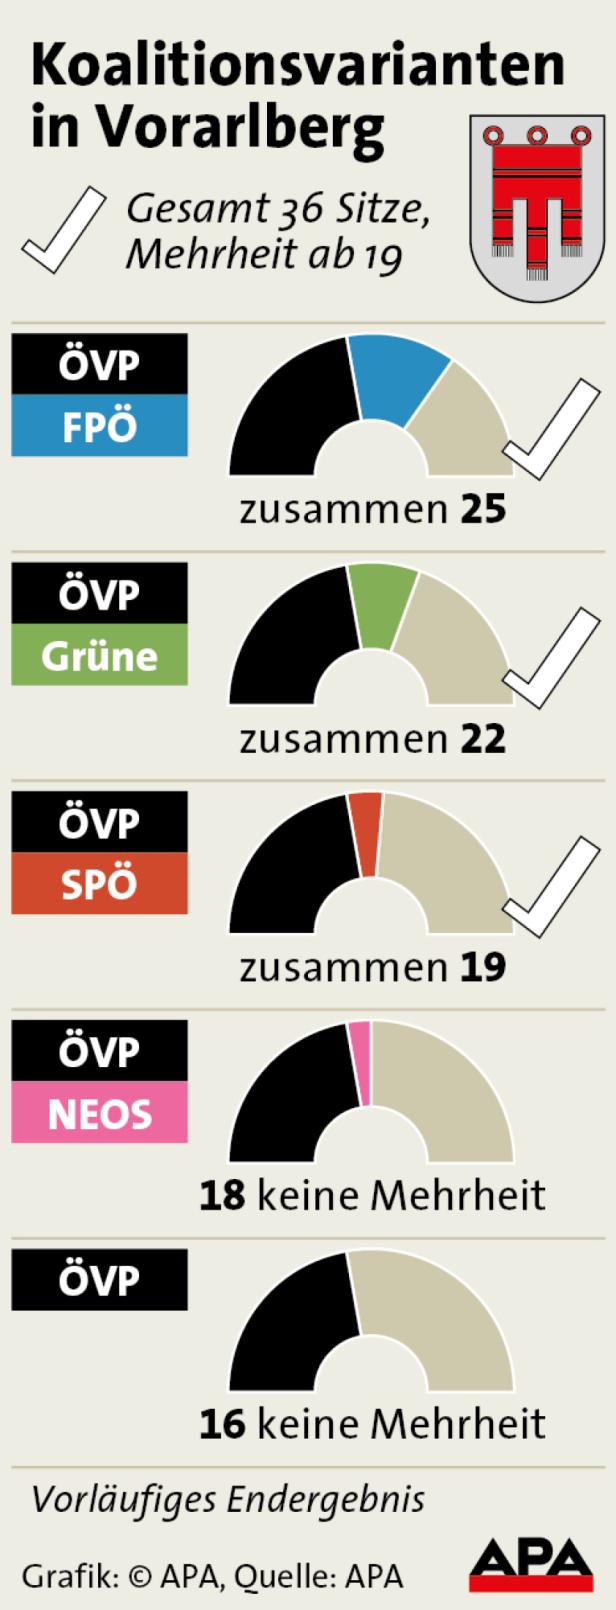 ÖVP sucht einen Regierungspartner